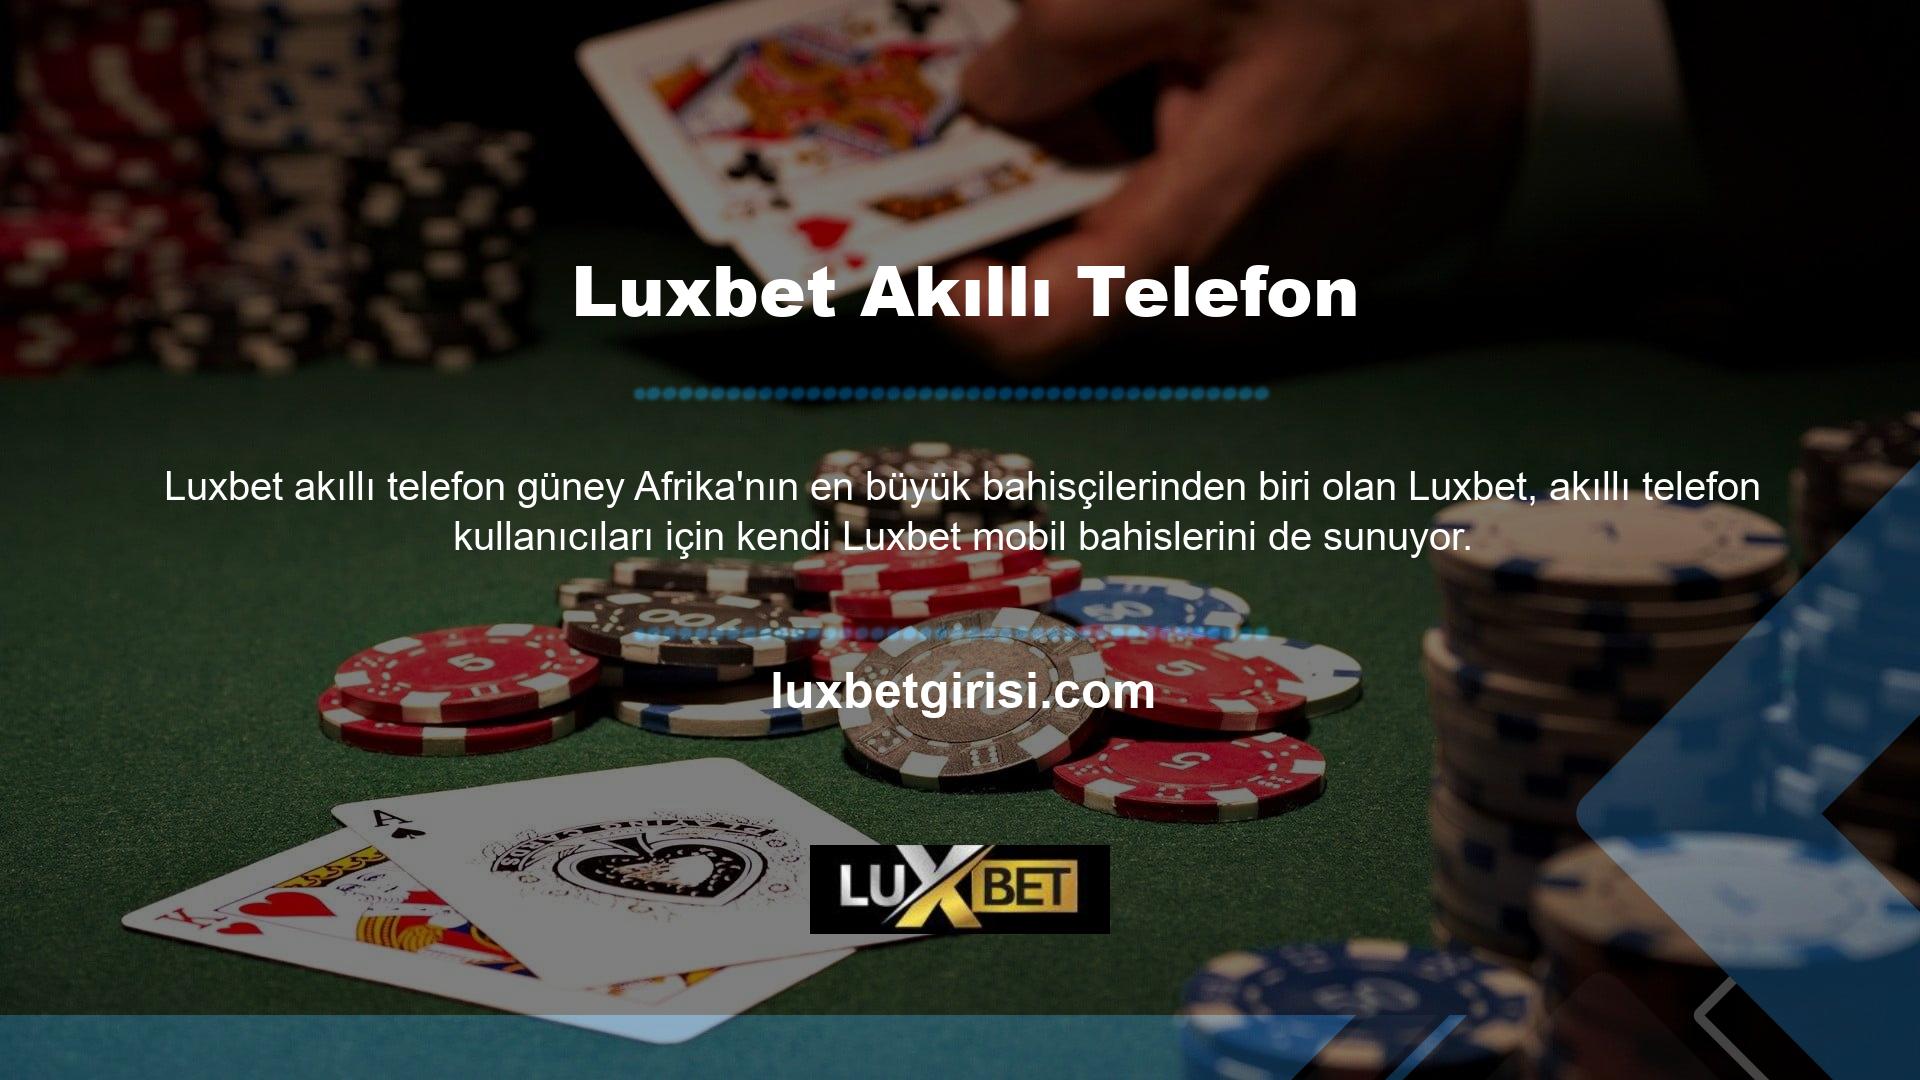 Luxbet uygulaması, spor listelerinin şirketin resmi web sitesinde nasıl göründüğüne benzer şekilde çalışır